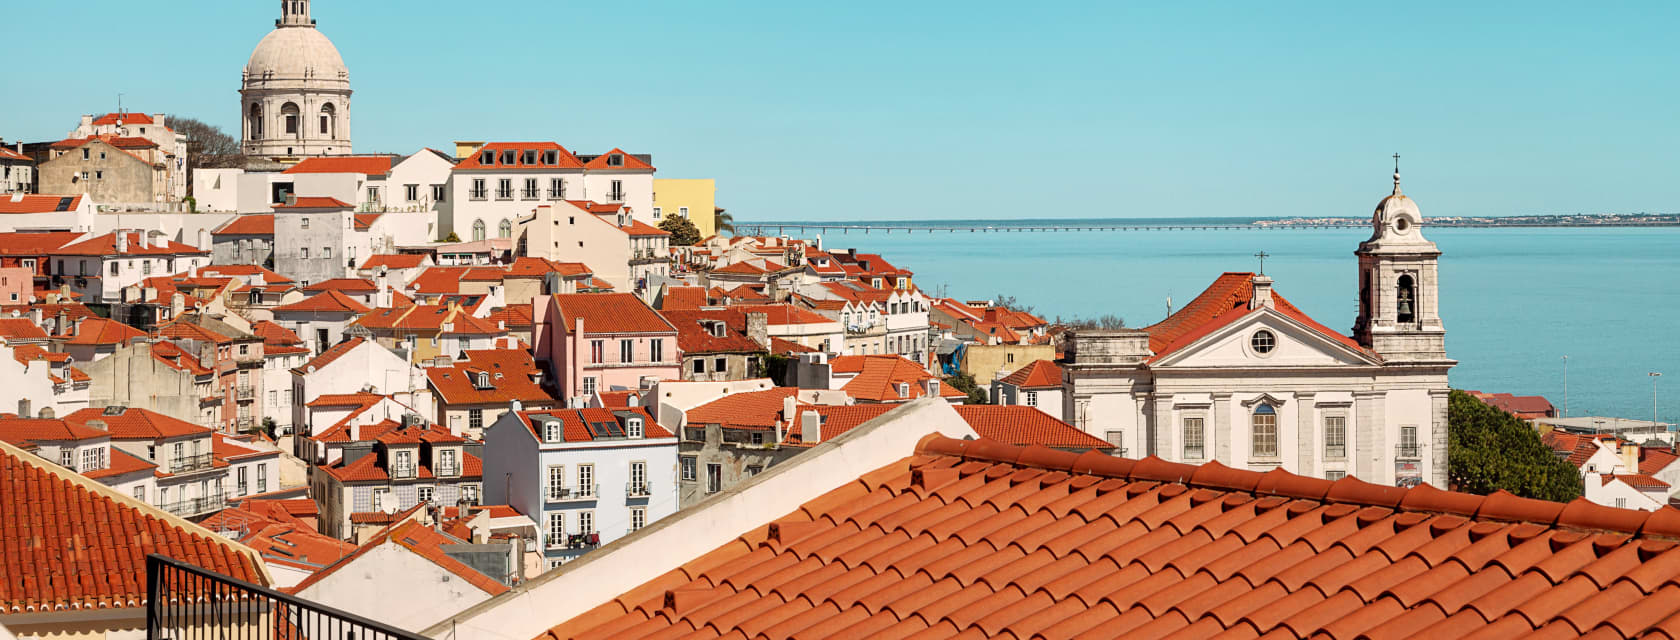 Matkat Lissabon | Kaupunkilomat, lennot ja hotellit | Tjäreborg